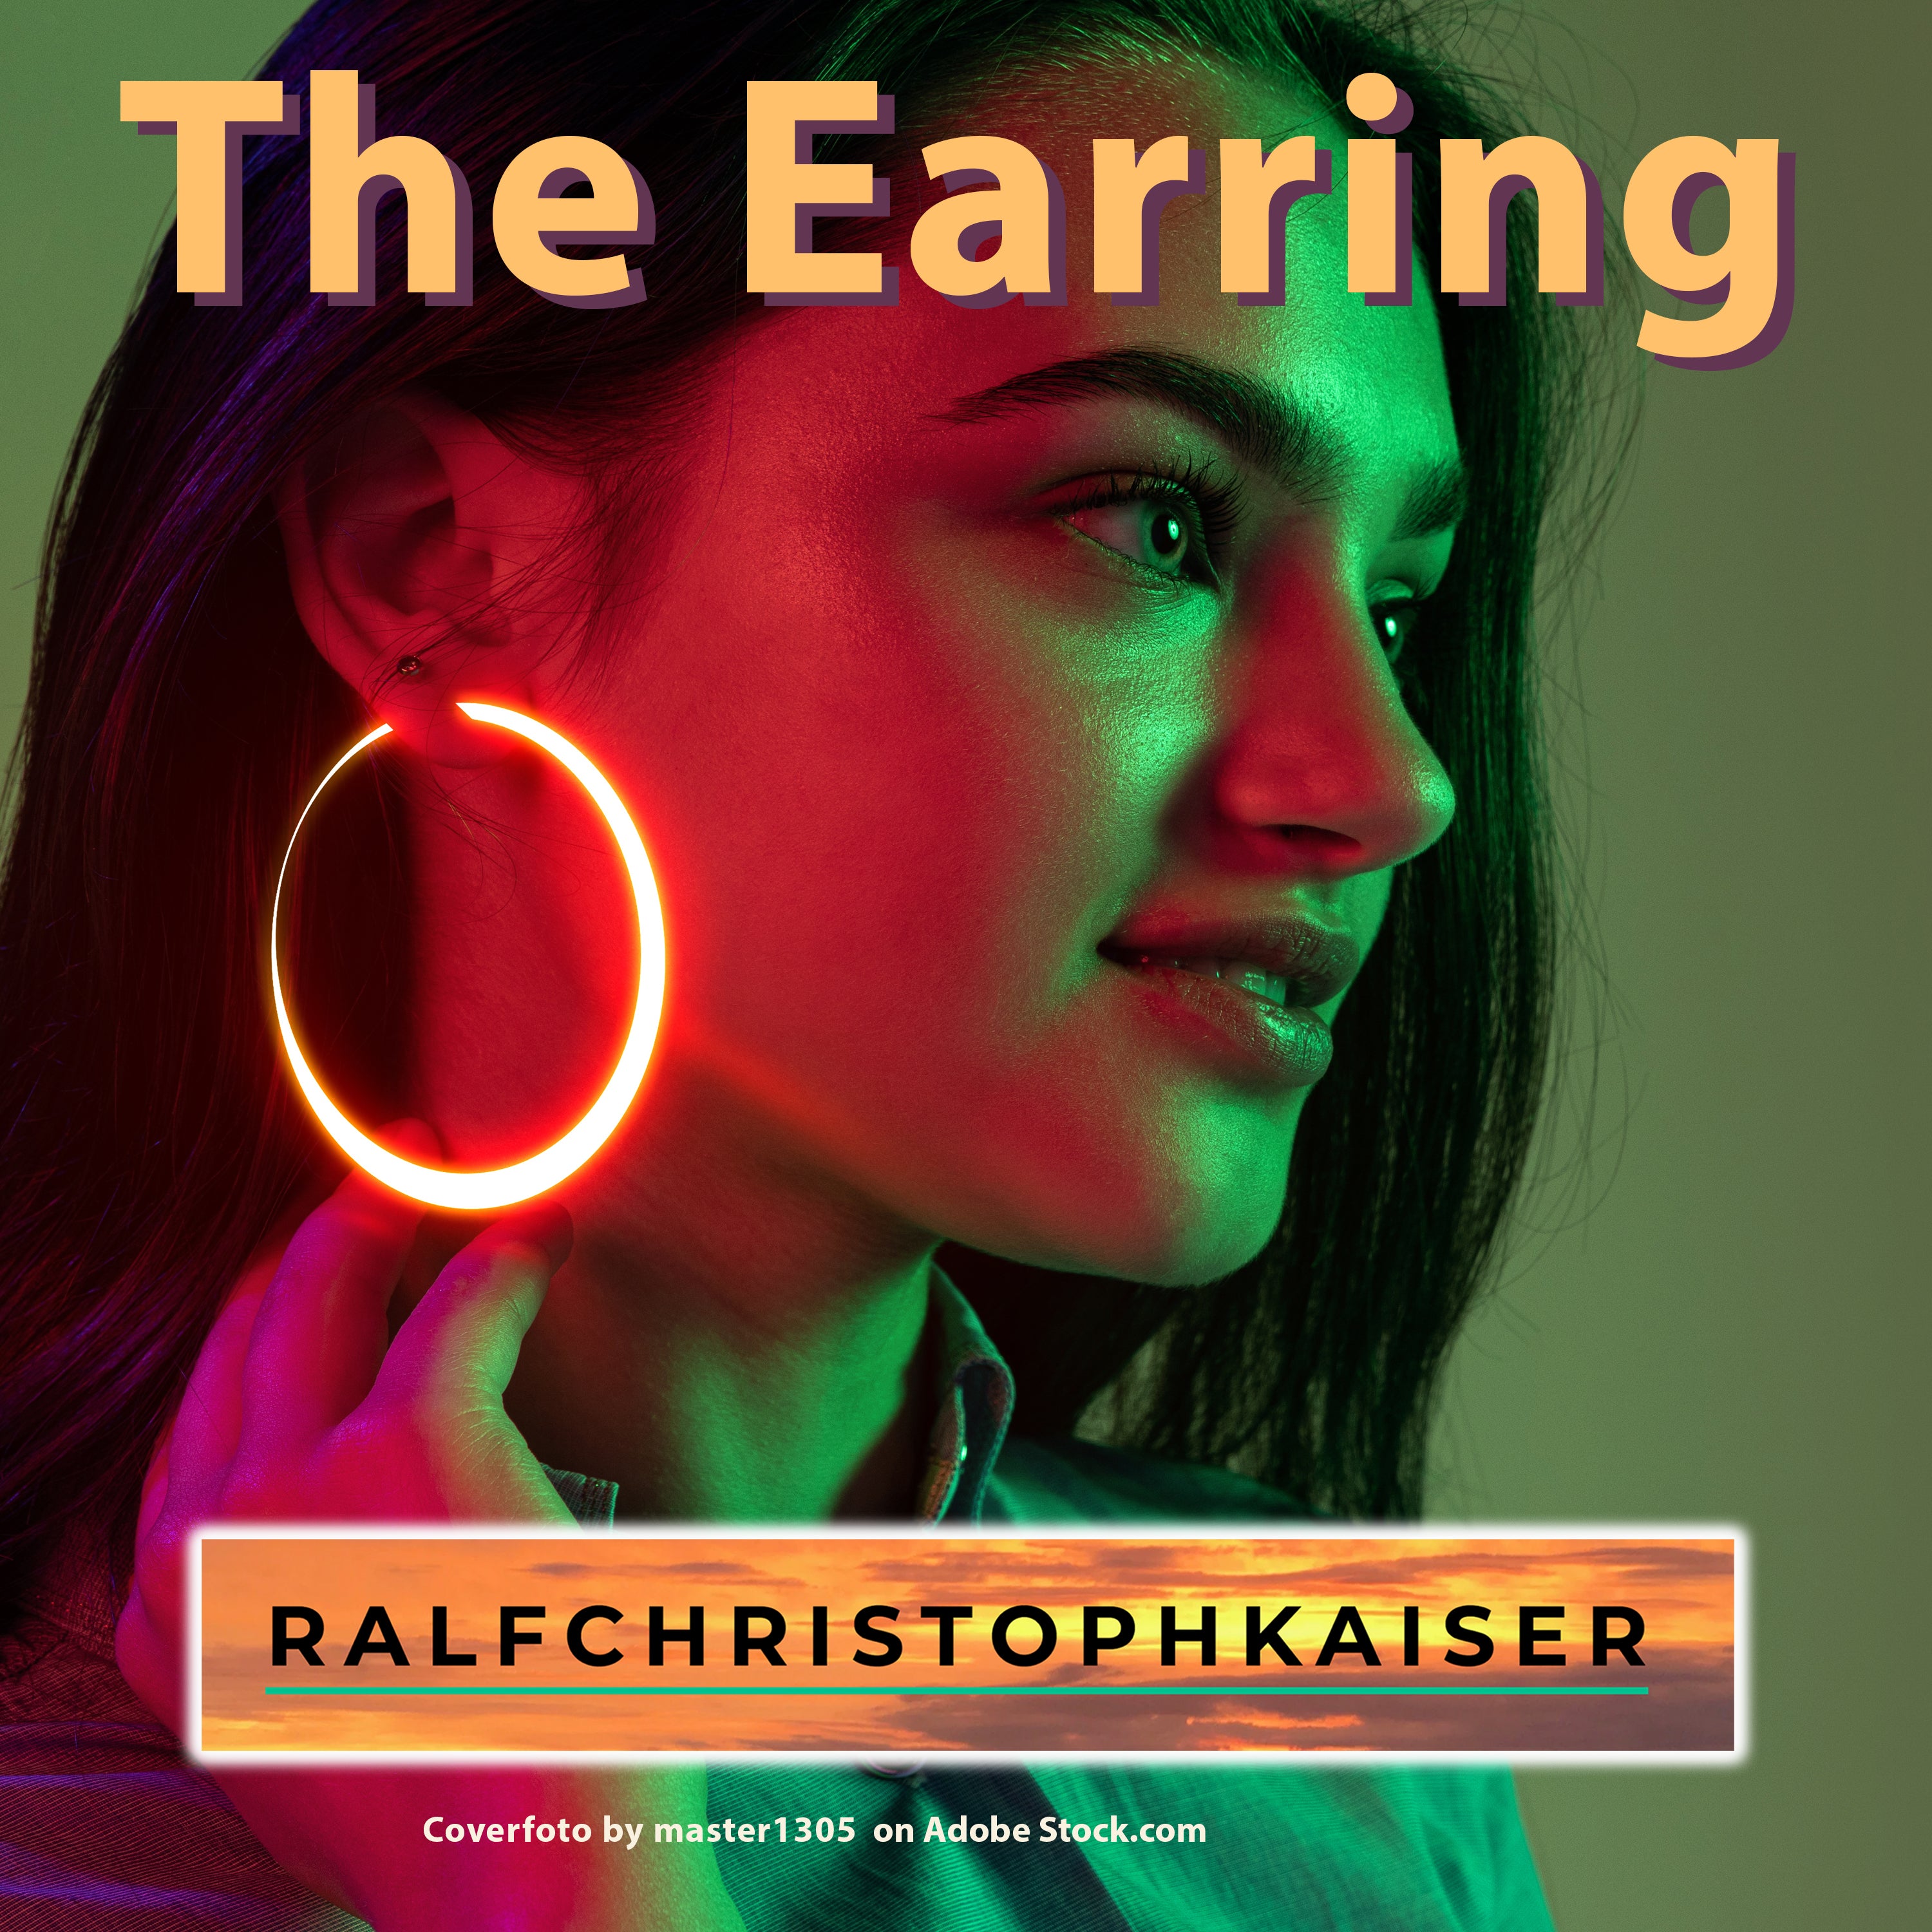 "The Earring" der neue Song von Ralf Christoph Kaiser jetzt als 32 bit 48 Khz wav Datei und als mp3 zum Download hier im Store mit dabei die Lyrics als PDF